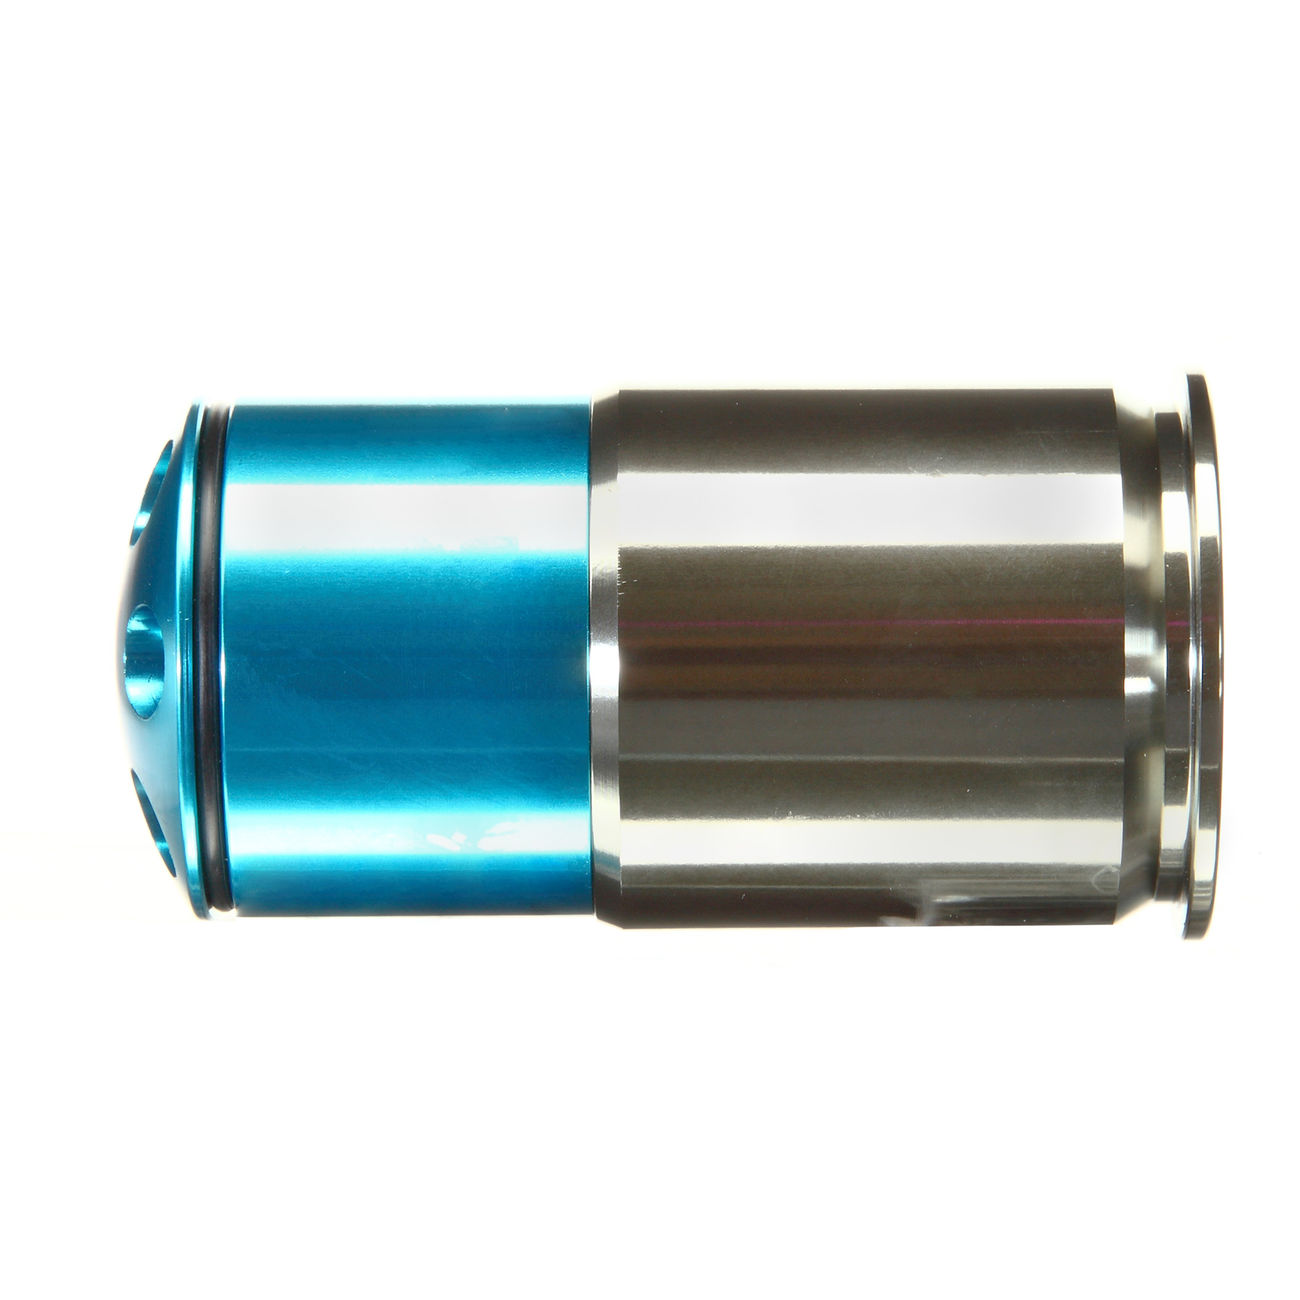 MadBull M781 40mm Vollmetall Hülse / Einlegepatrone f. 42 8mm BBs blau Bild 1